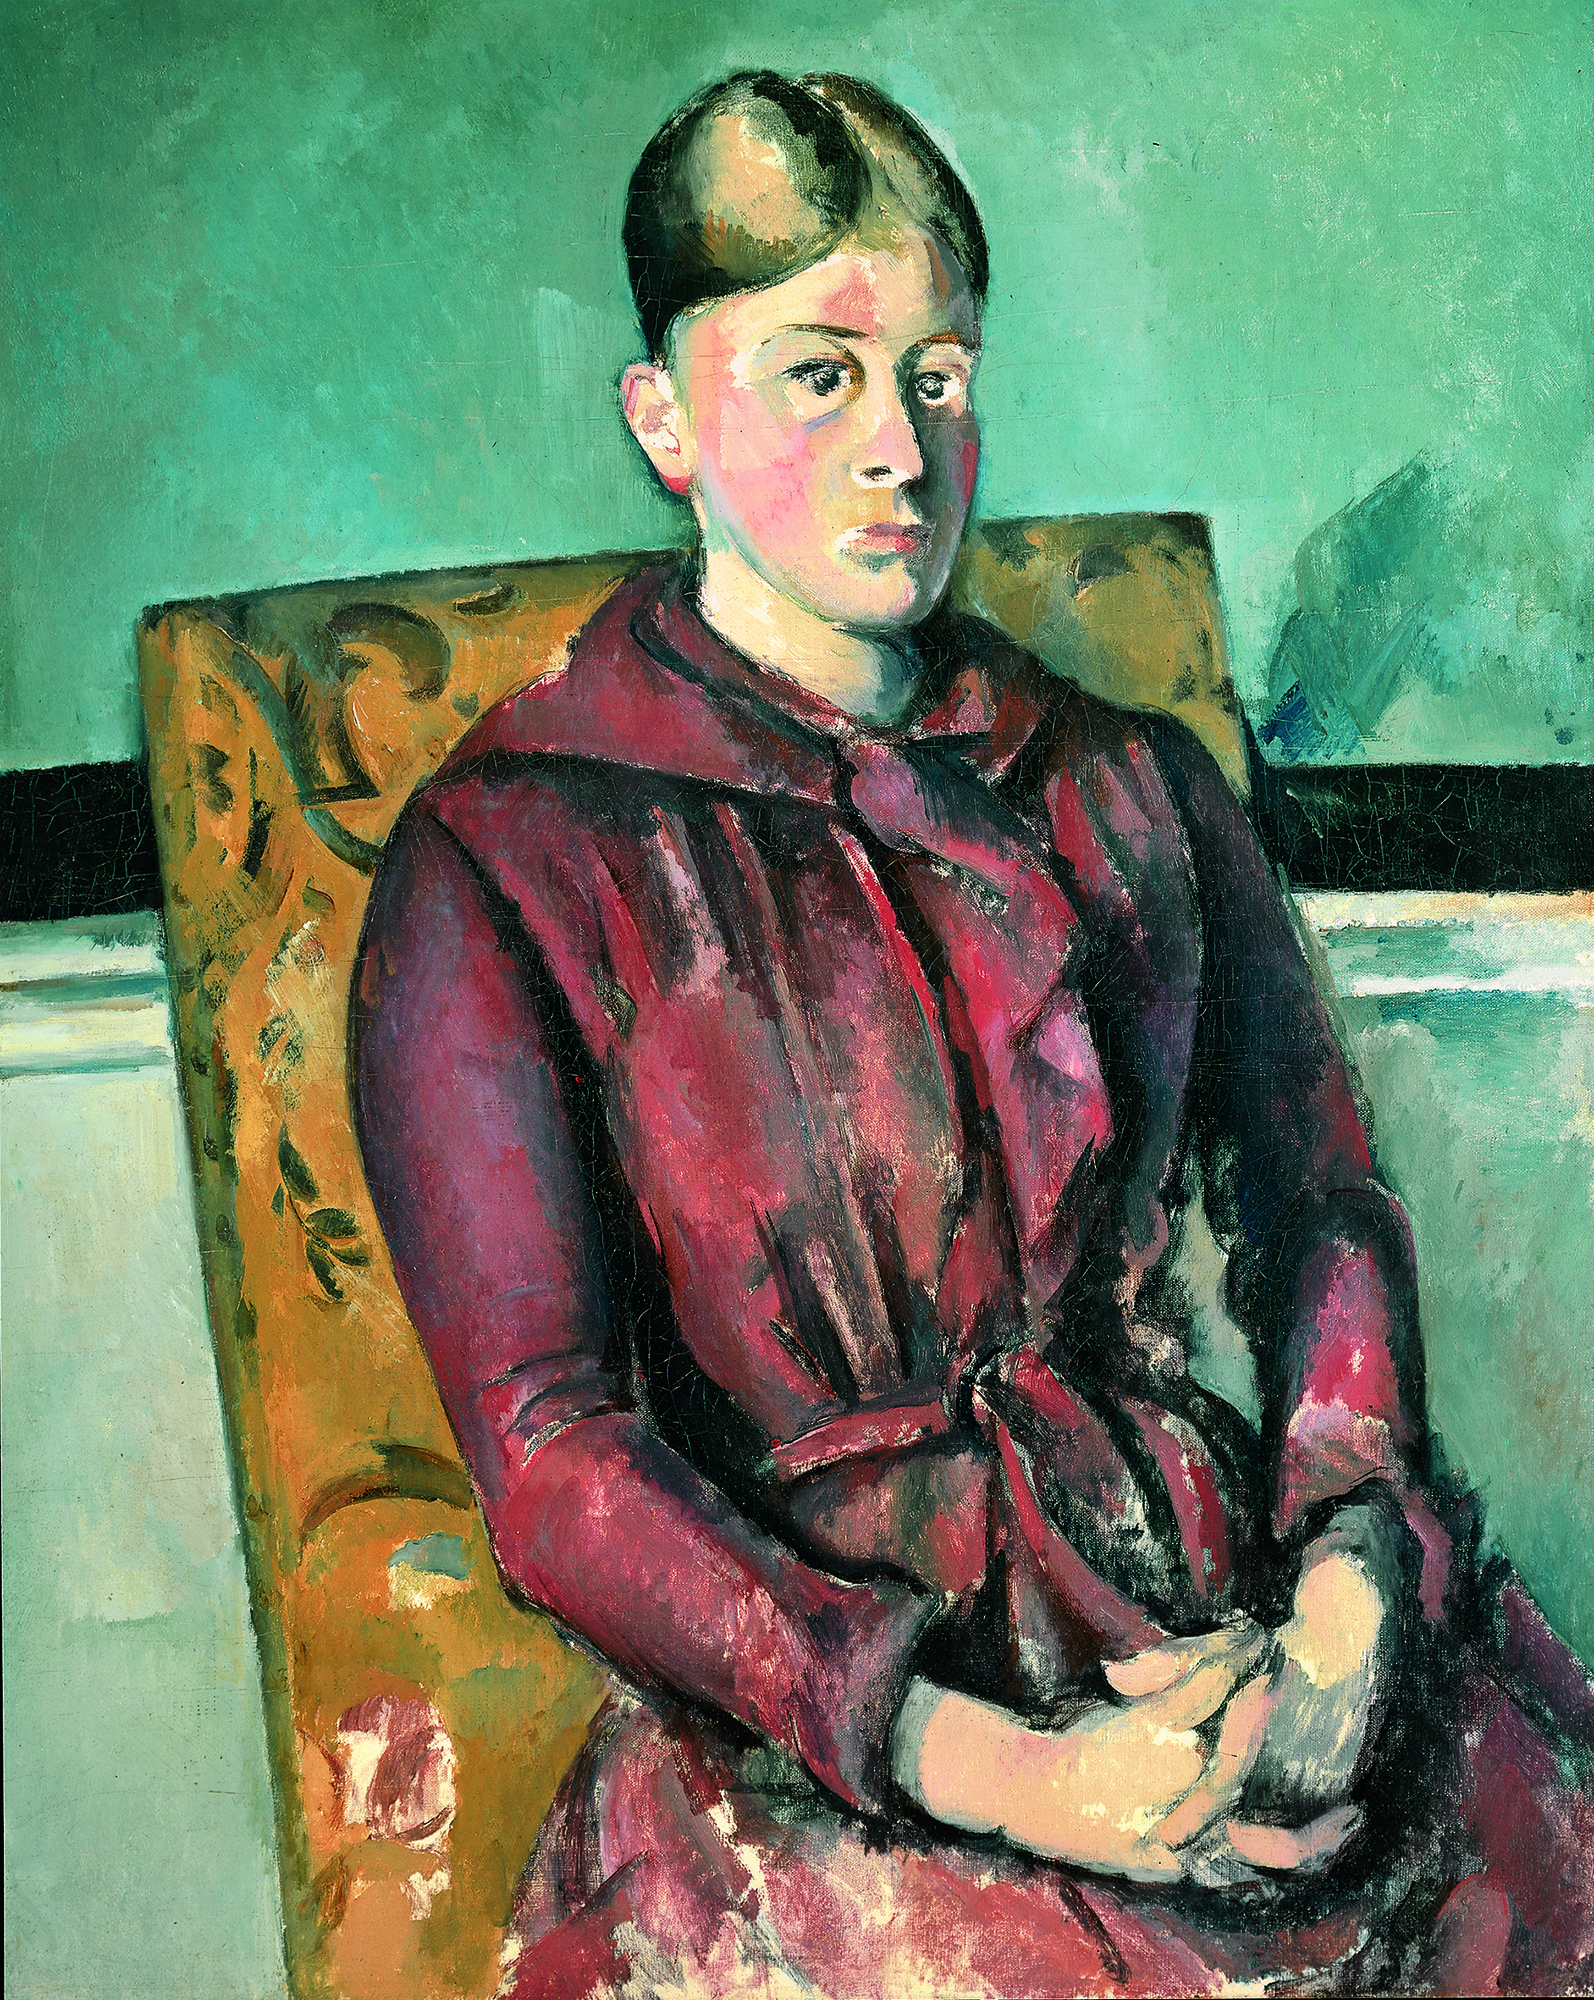 Abbildung des Werks "Madame Cézanne im gelben Lehnstuhl" des Künstlers Paul Cézanne, das in der Ausstellung "Cézanne Metamorphosen" vom 28. Oktober 2017 bis 11. Februar 2018 in der Staatlichen Kunsthalle Karlsruhe zu sehen war.